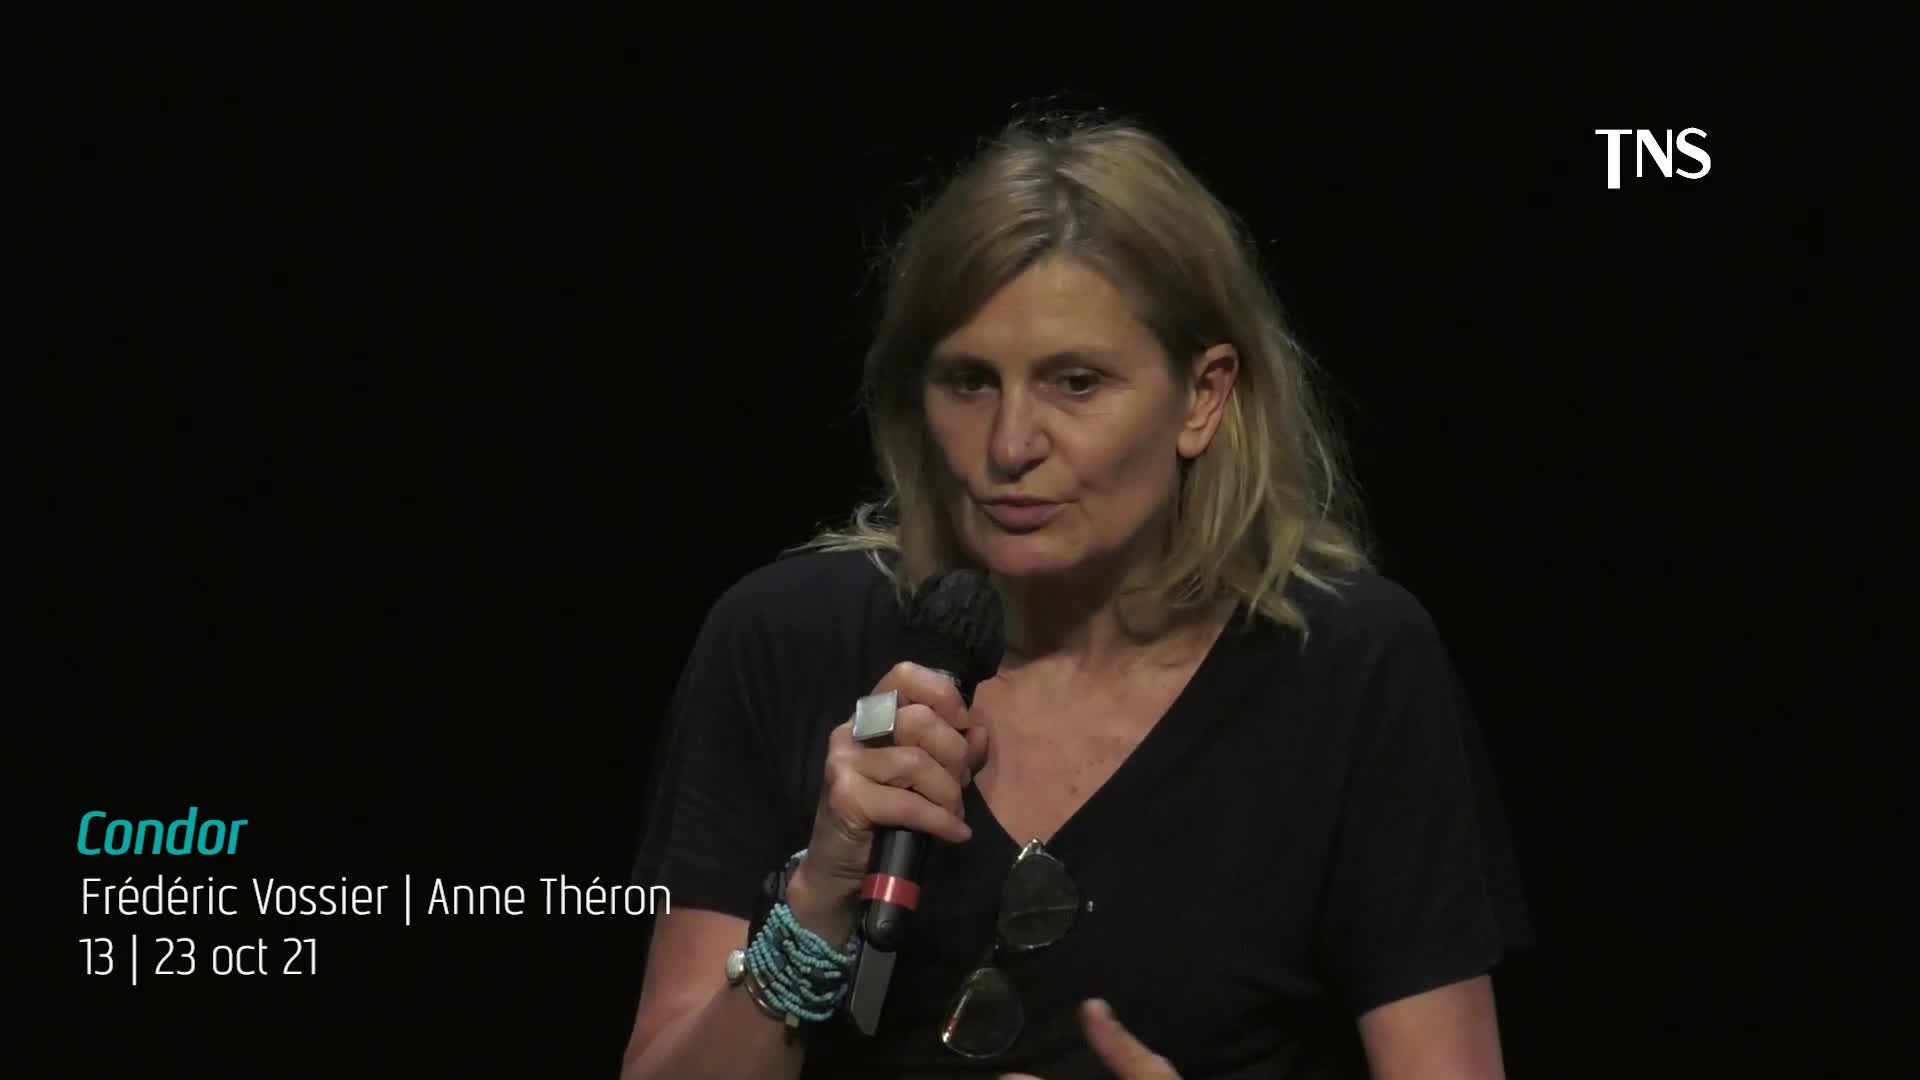 Vidéo "Condor" - Frédéric Vossier/Anne Théron - Présentation